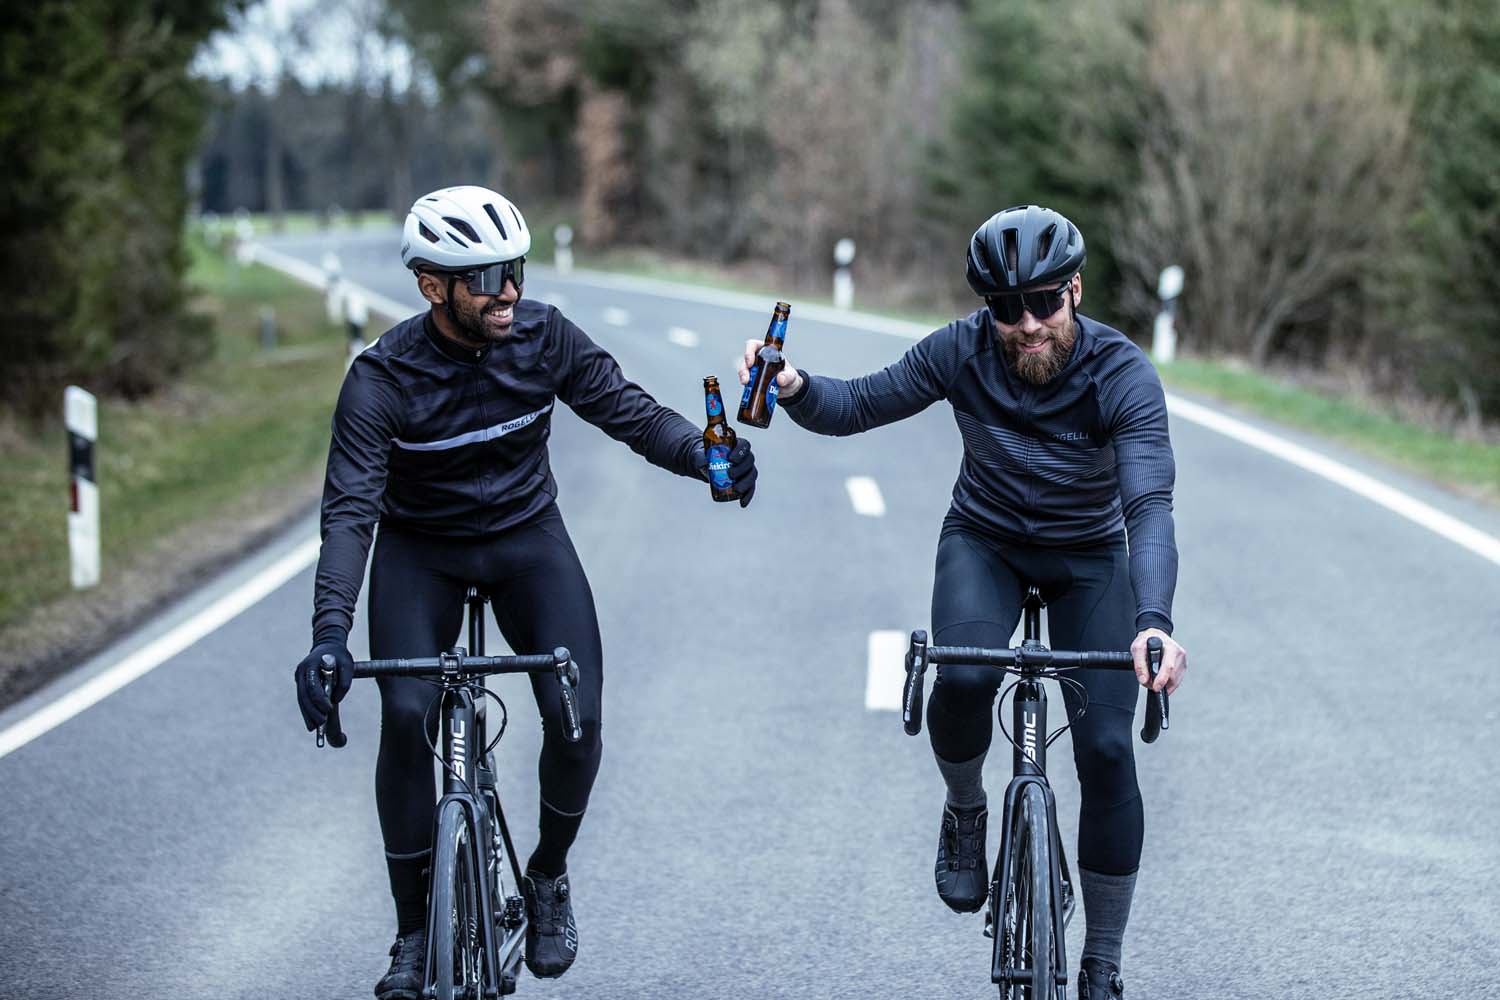 Twee wielrenners proosten op een geslaagde rit terwijl ze genieten van een verfrissend drankje onderweg, omringd door de schoonheid van de natuur.